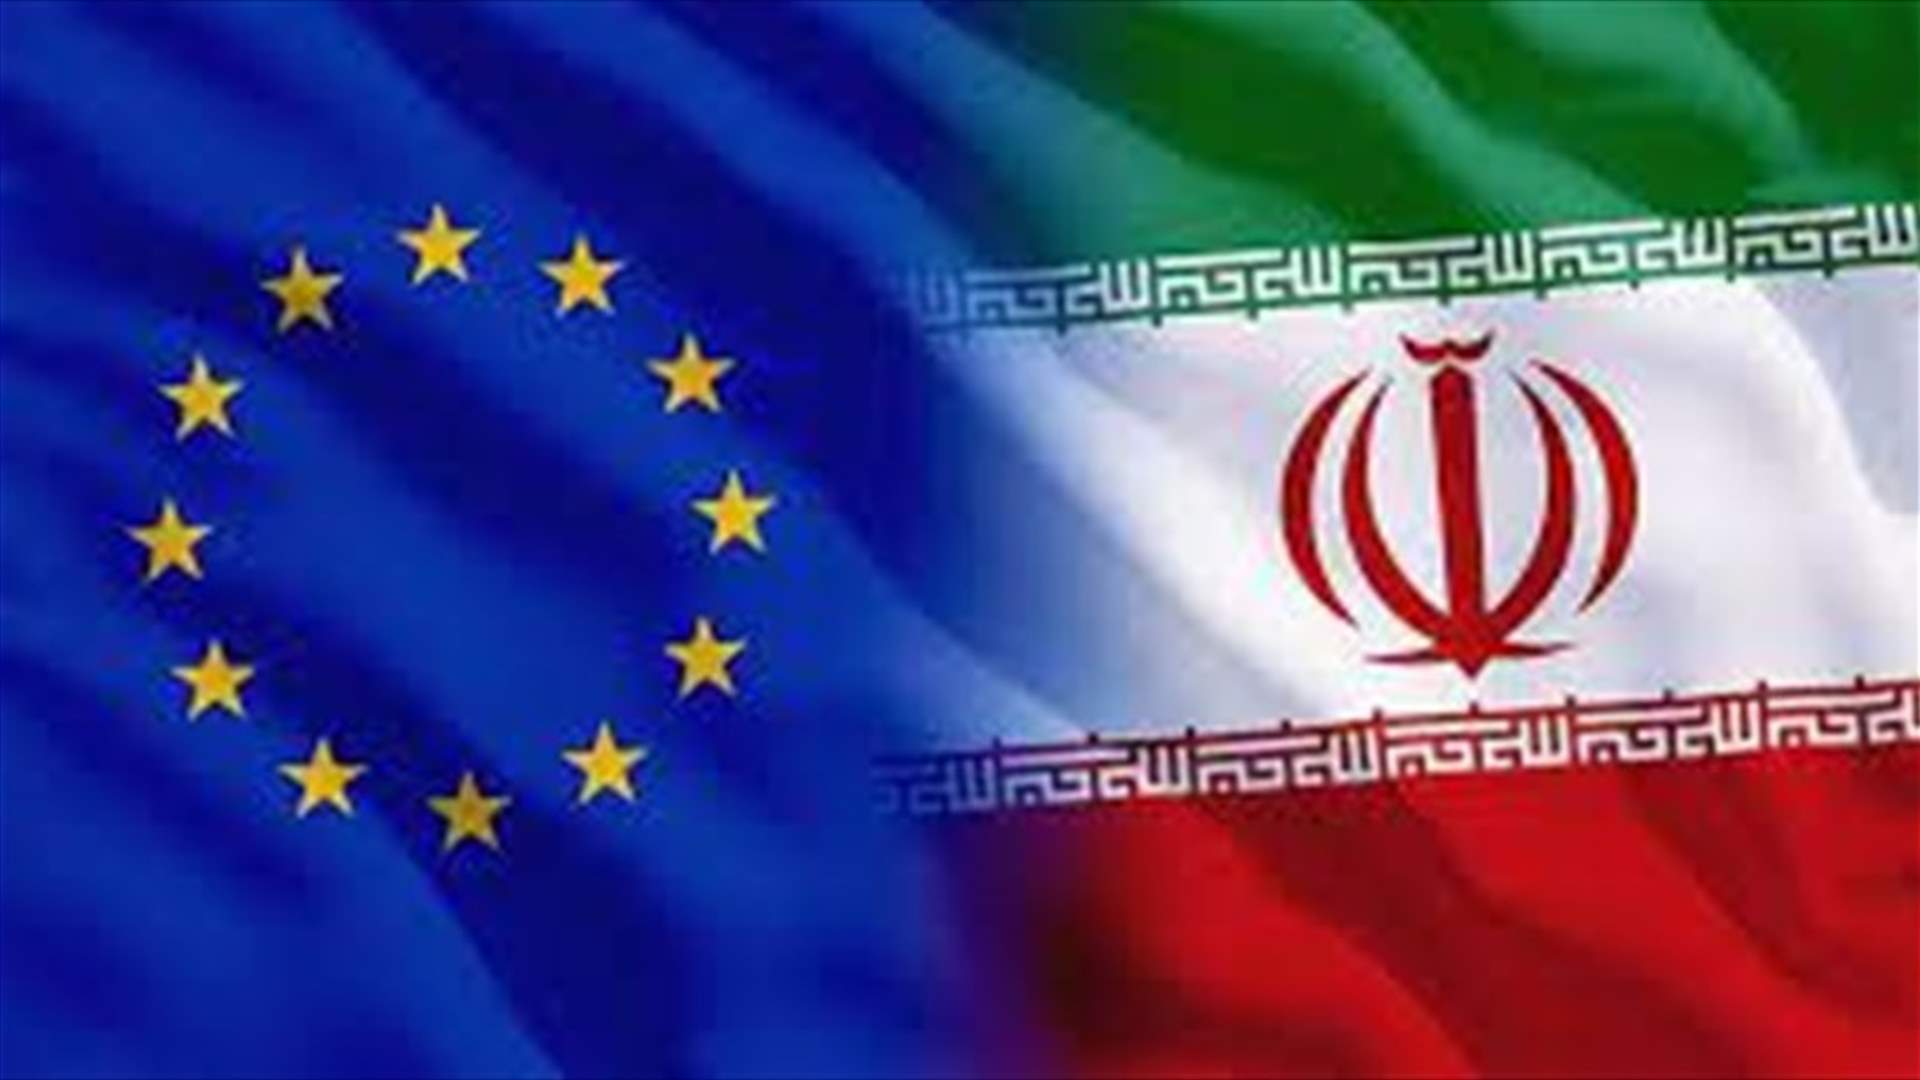 Iranian, EU nuclear negotiators meet in Jordan - Iranian media